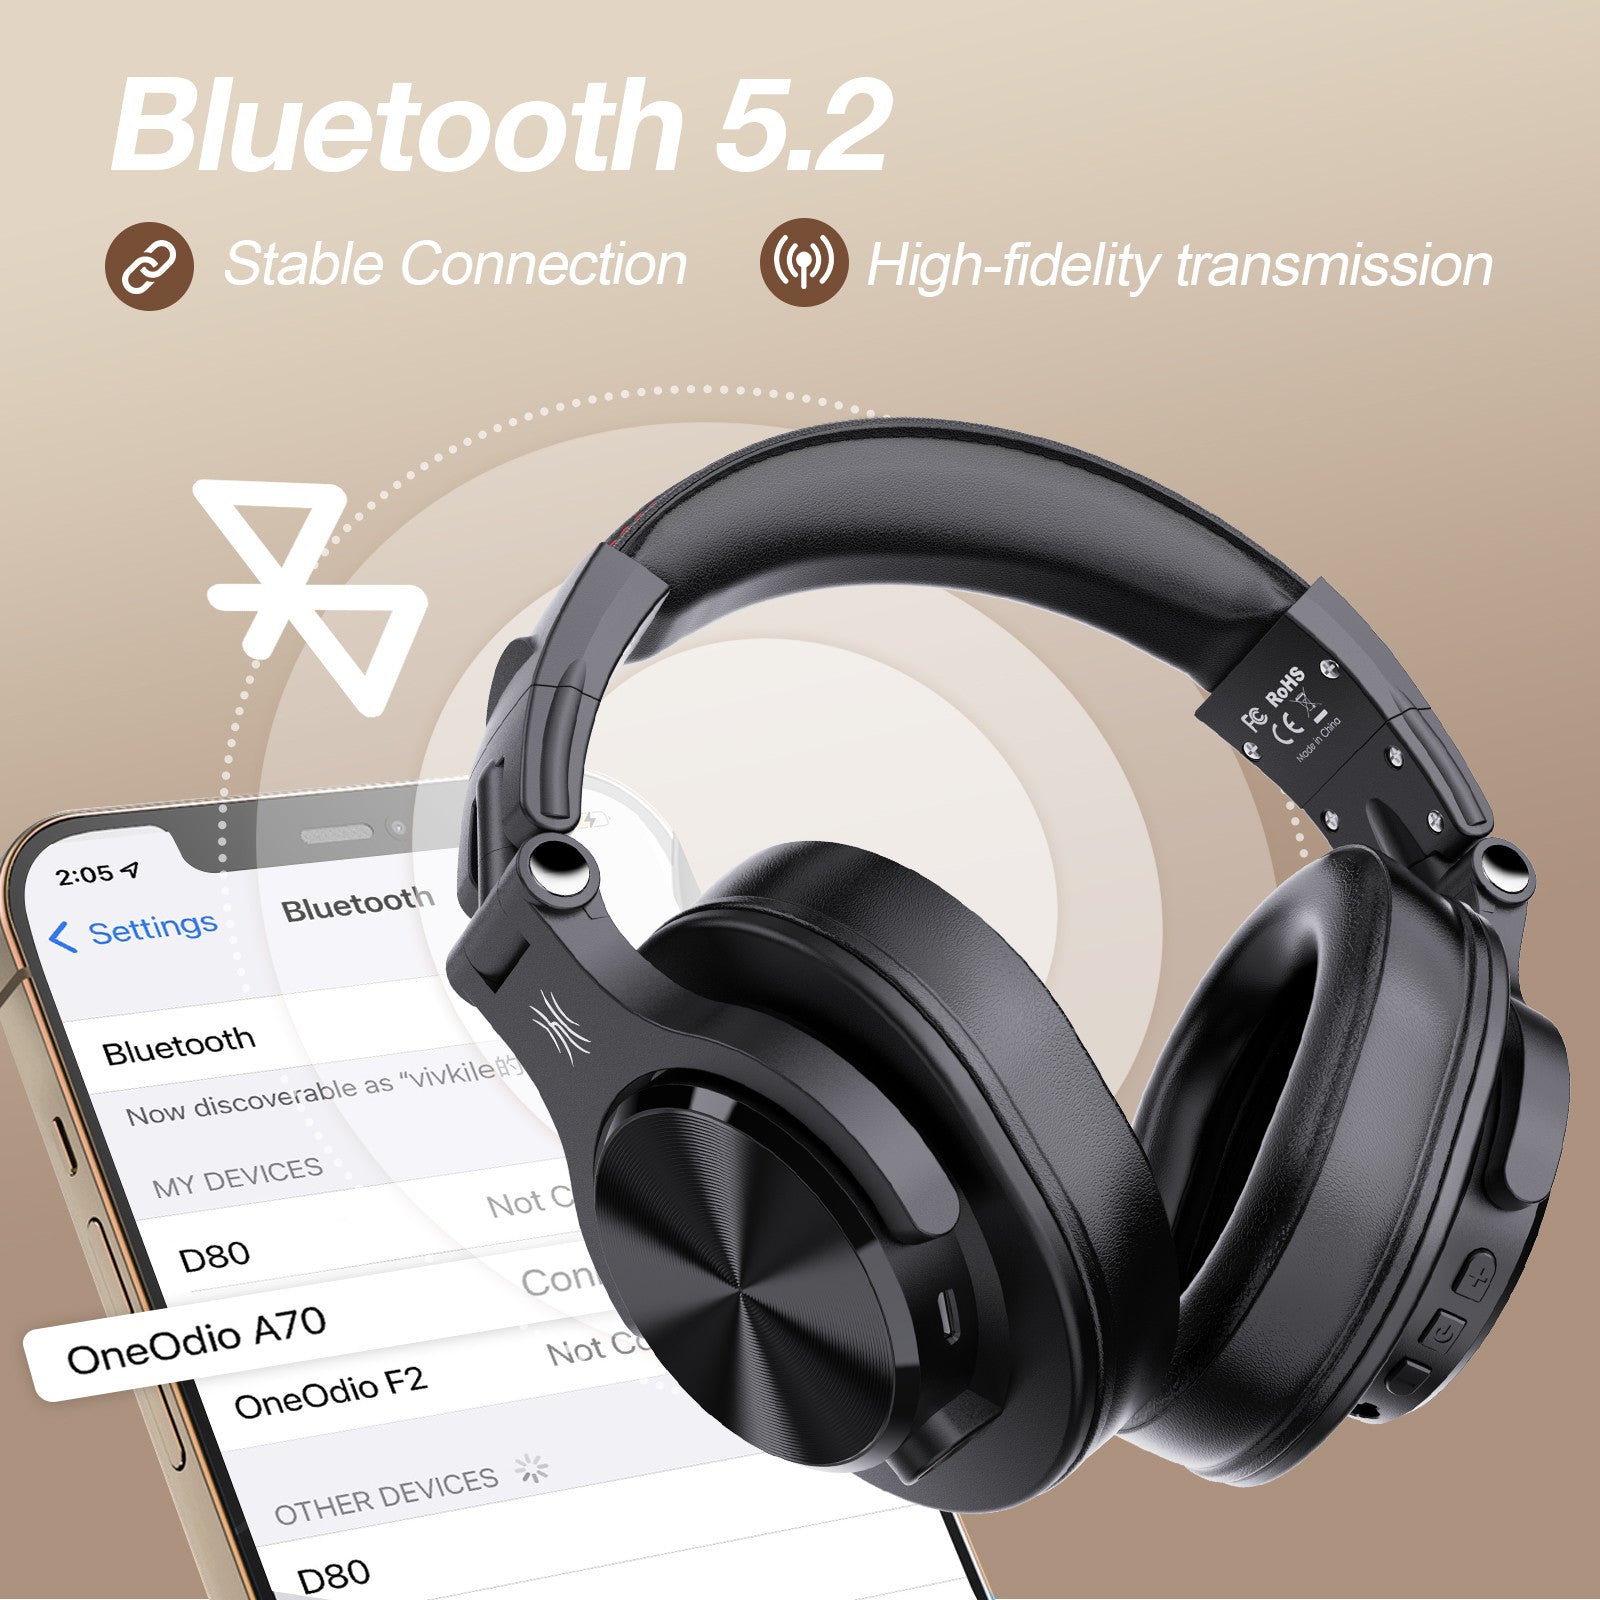 Auriculares ONEODIO A70 Fusion con Fio + sin Fio Bluetooth 5.2